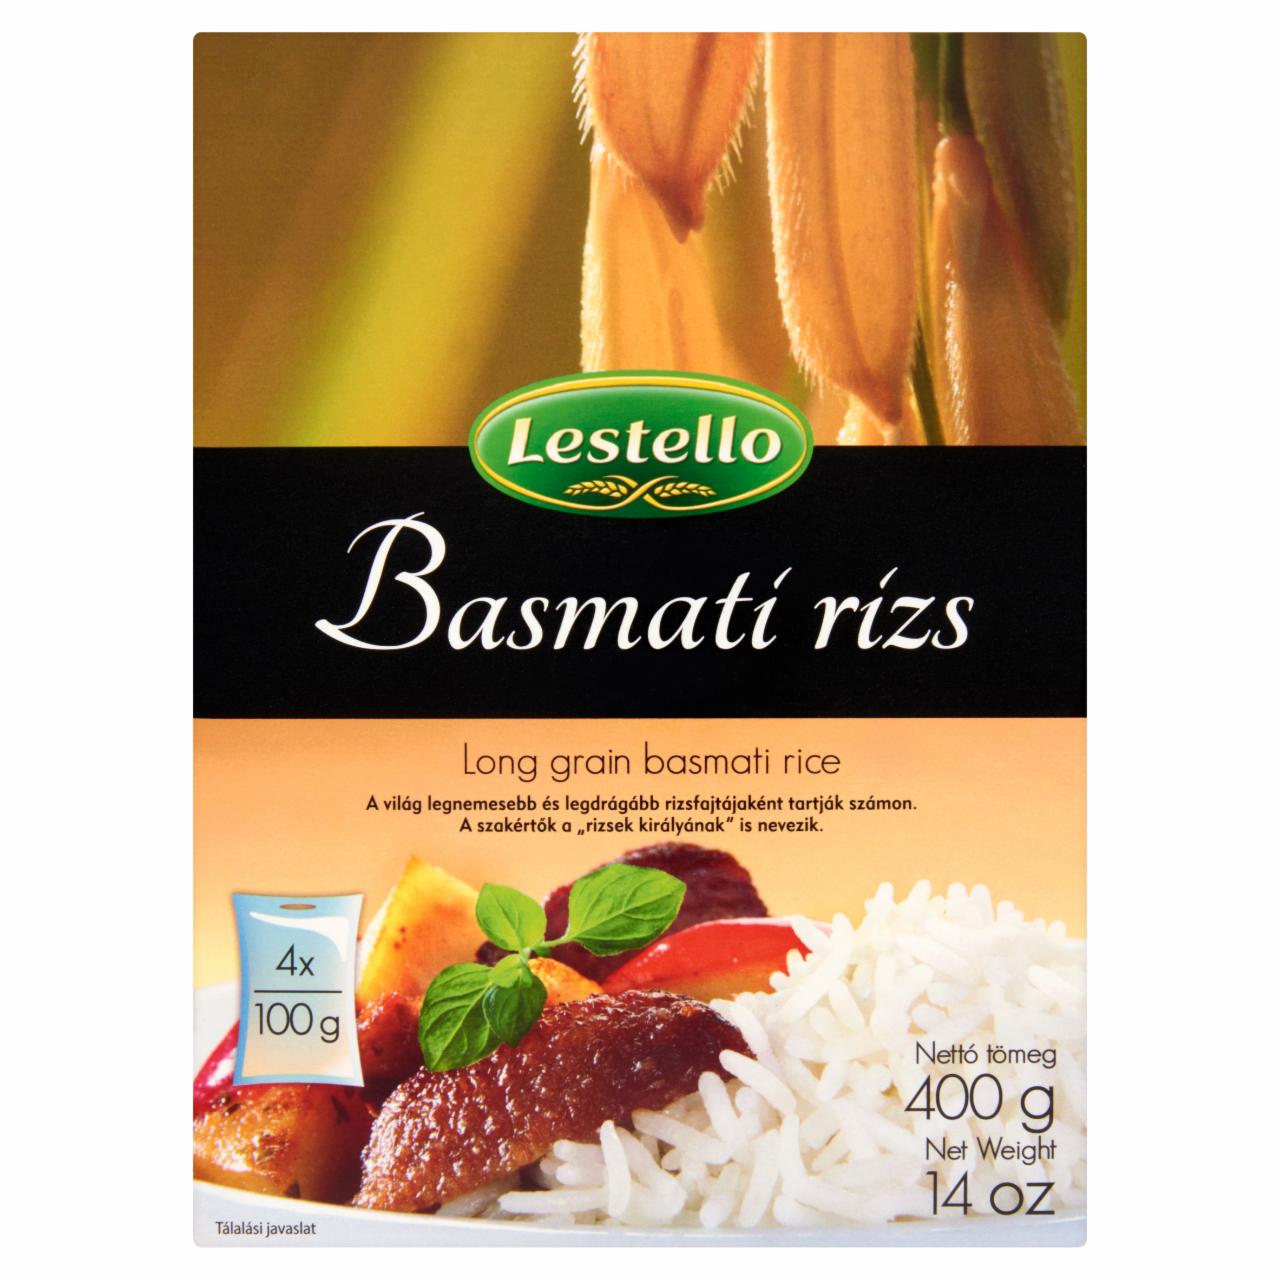 Képek - Lestello hosszú szemű fehér basmati rizs 4 x 100 g